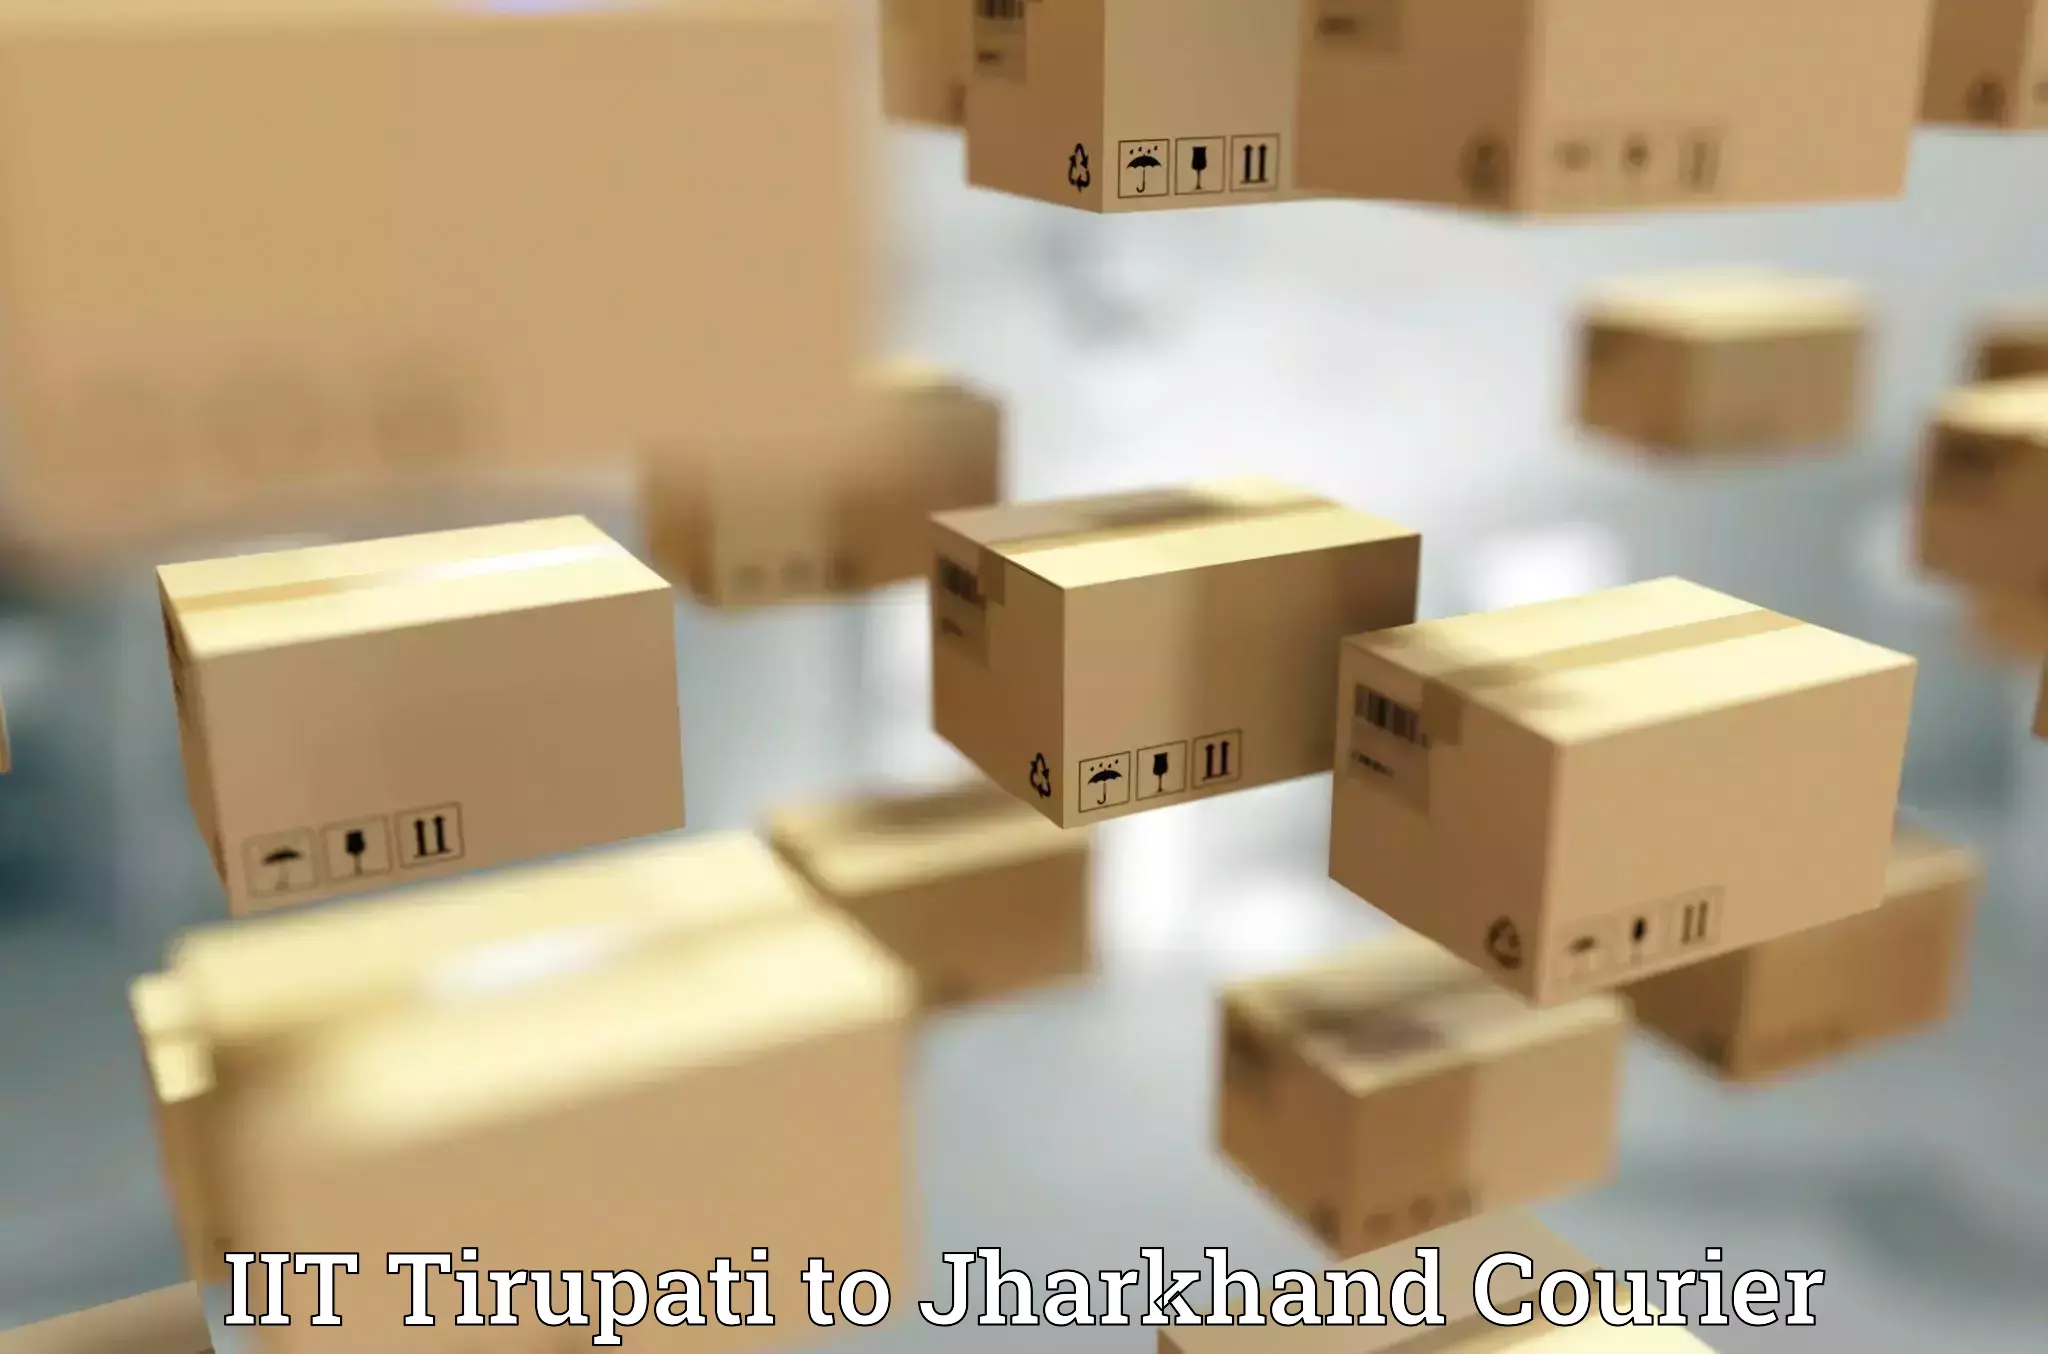 Flexible shipping options IIT Tirupati to Koderma